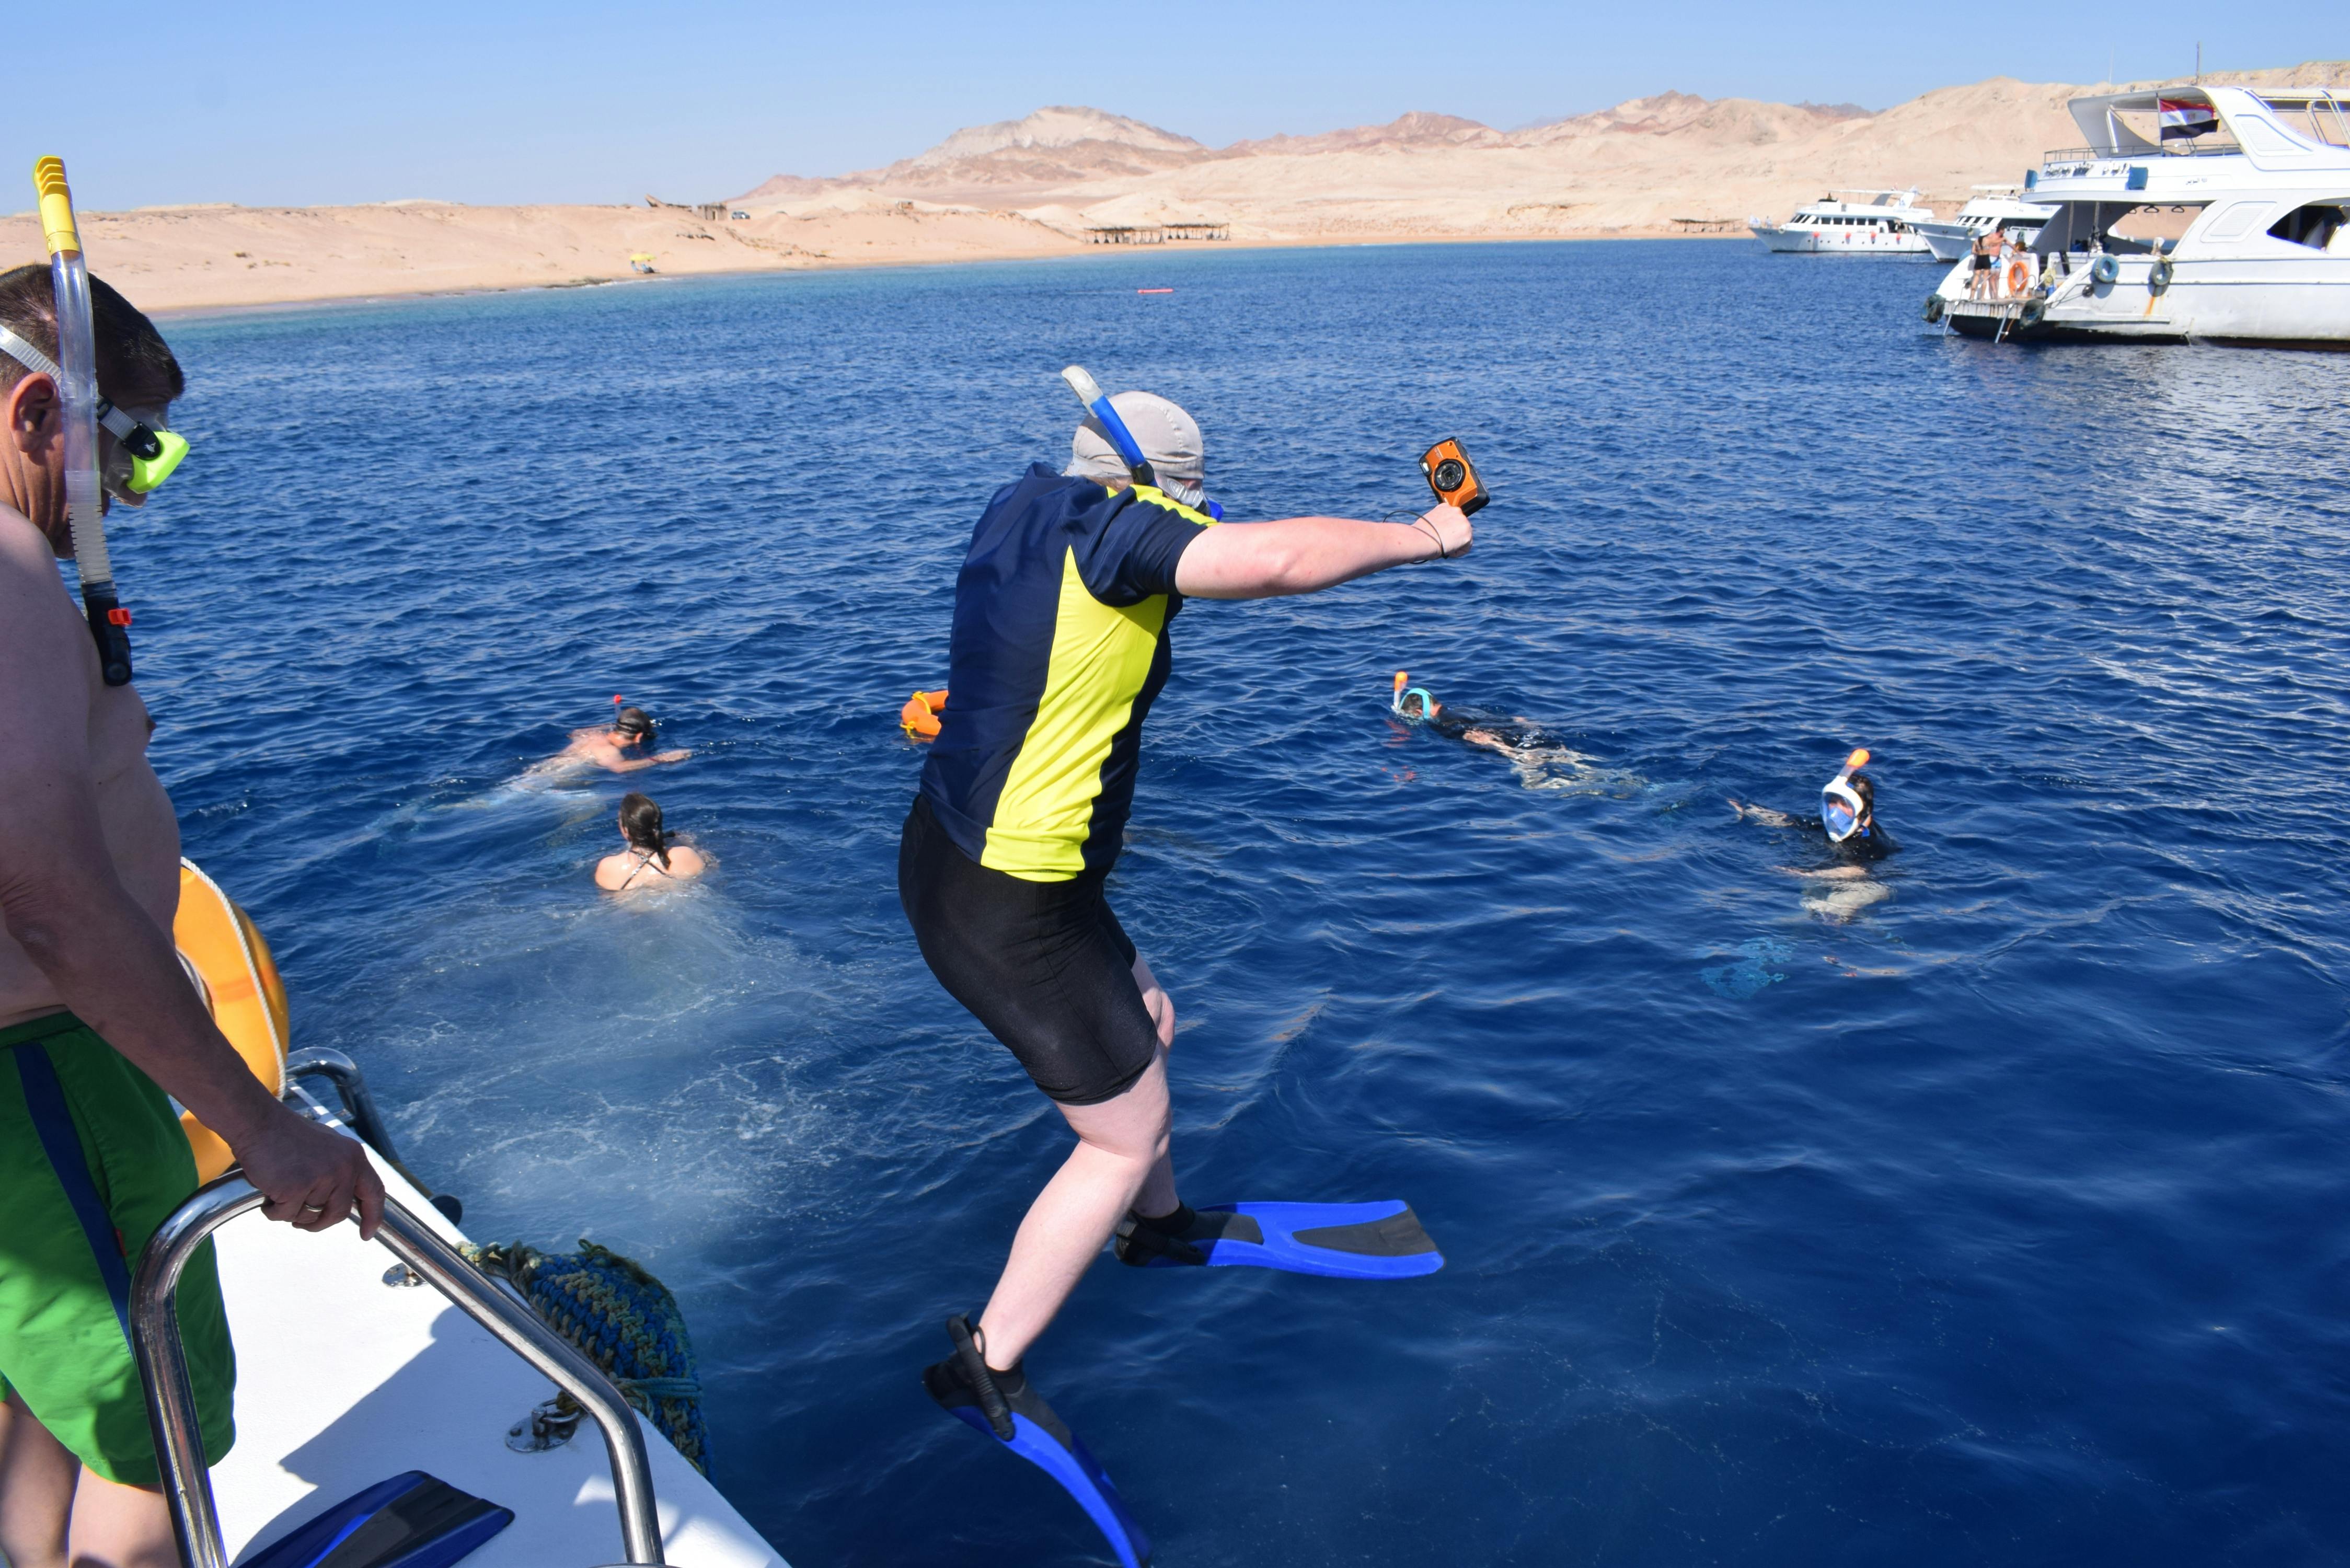 Halbtägiger Schnorchelausflug mit dem Boot in Sharm El Sheikh mit Mittagessen und Getränken